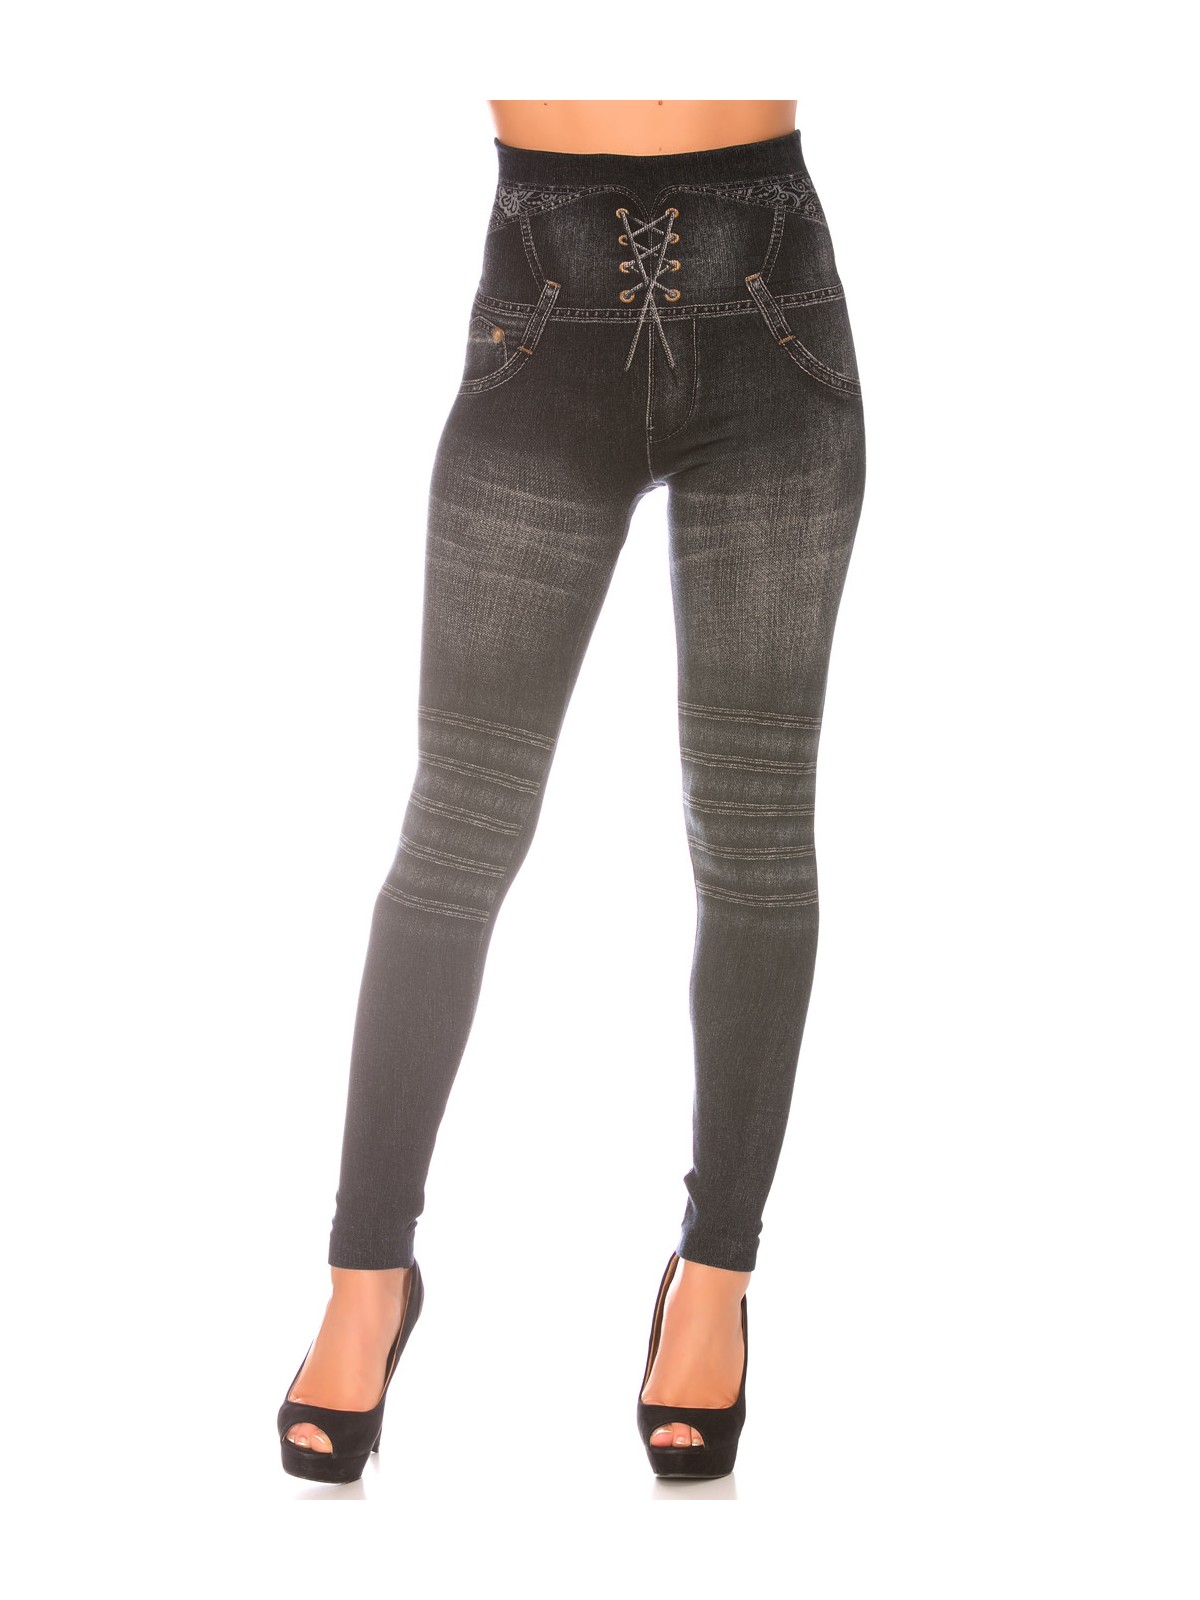 Leggings minceur noir style jeans taille haute et effet lien croisé. Effet Push-Up - 4